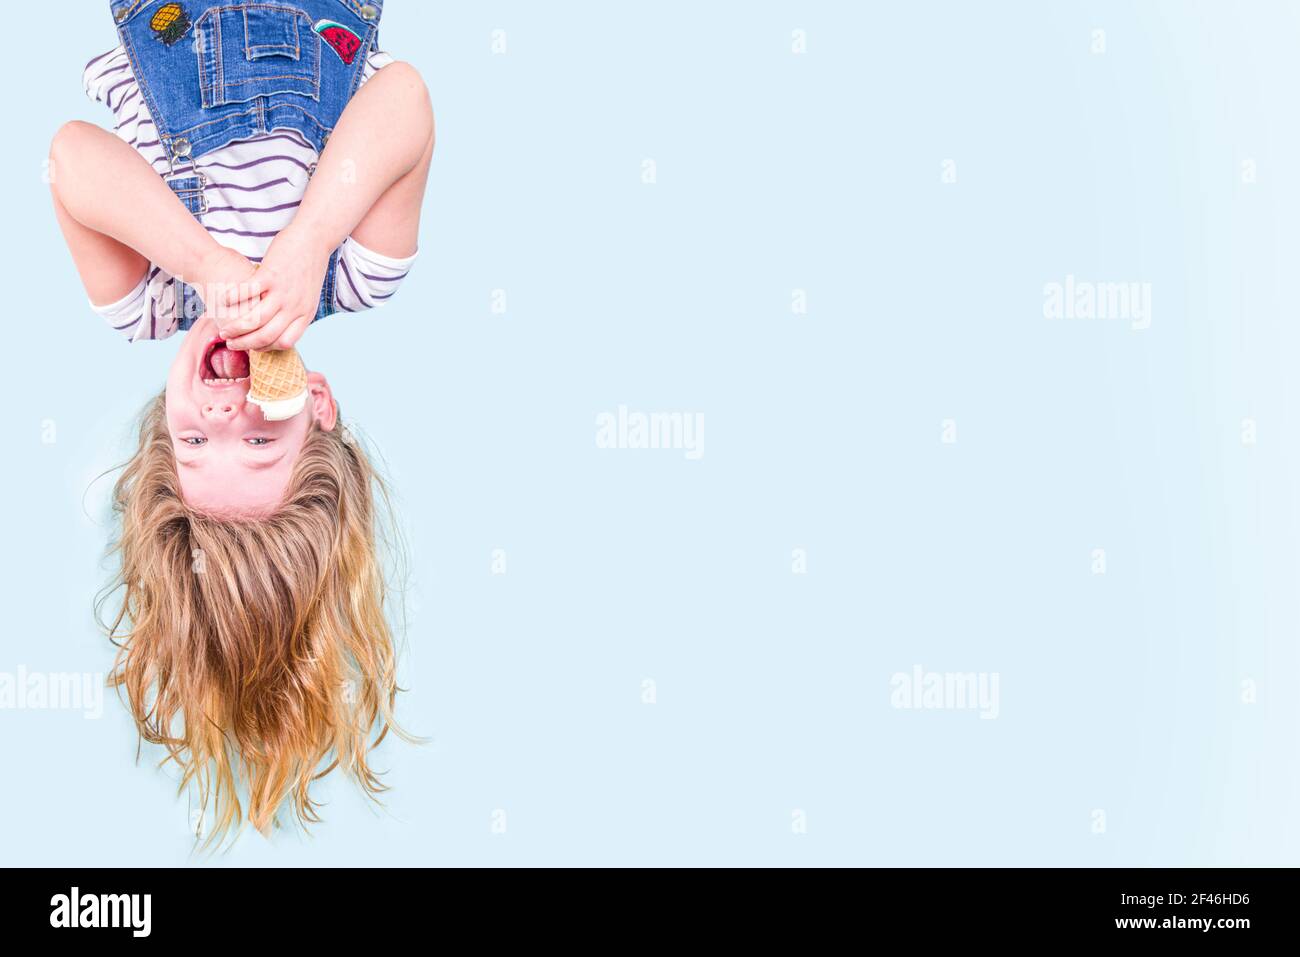 Cute fröhlich glücklich Kleinkind Kind Mädchen auf den Kopf mit flatternden Haaren, Essen Vanille Eis. Sommerurlaub Spaß Konzept auf blauem Hintergrund Kopie s Stockfoto